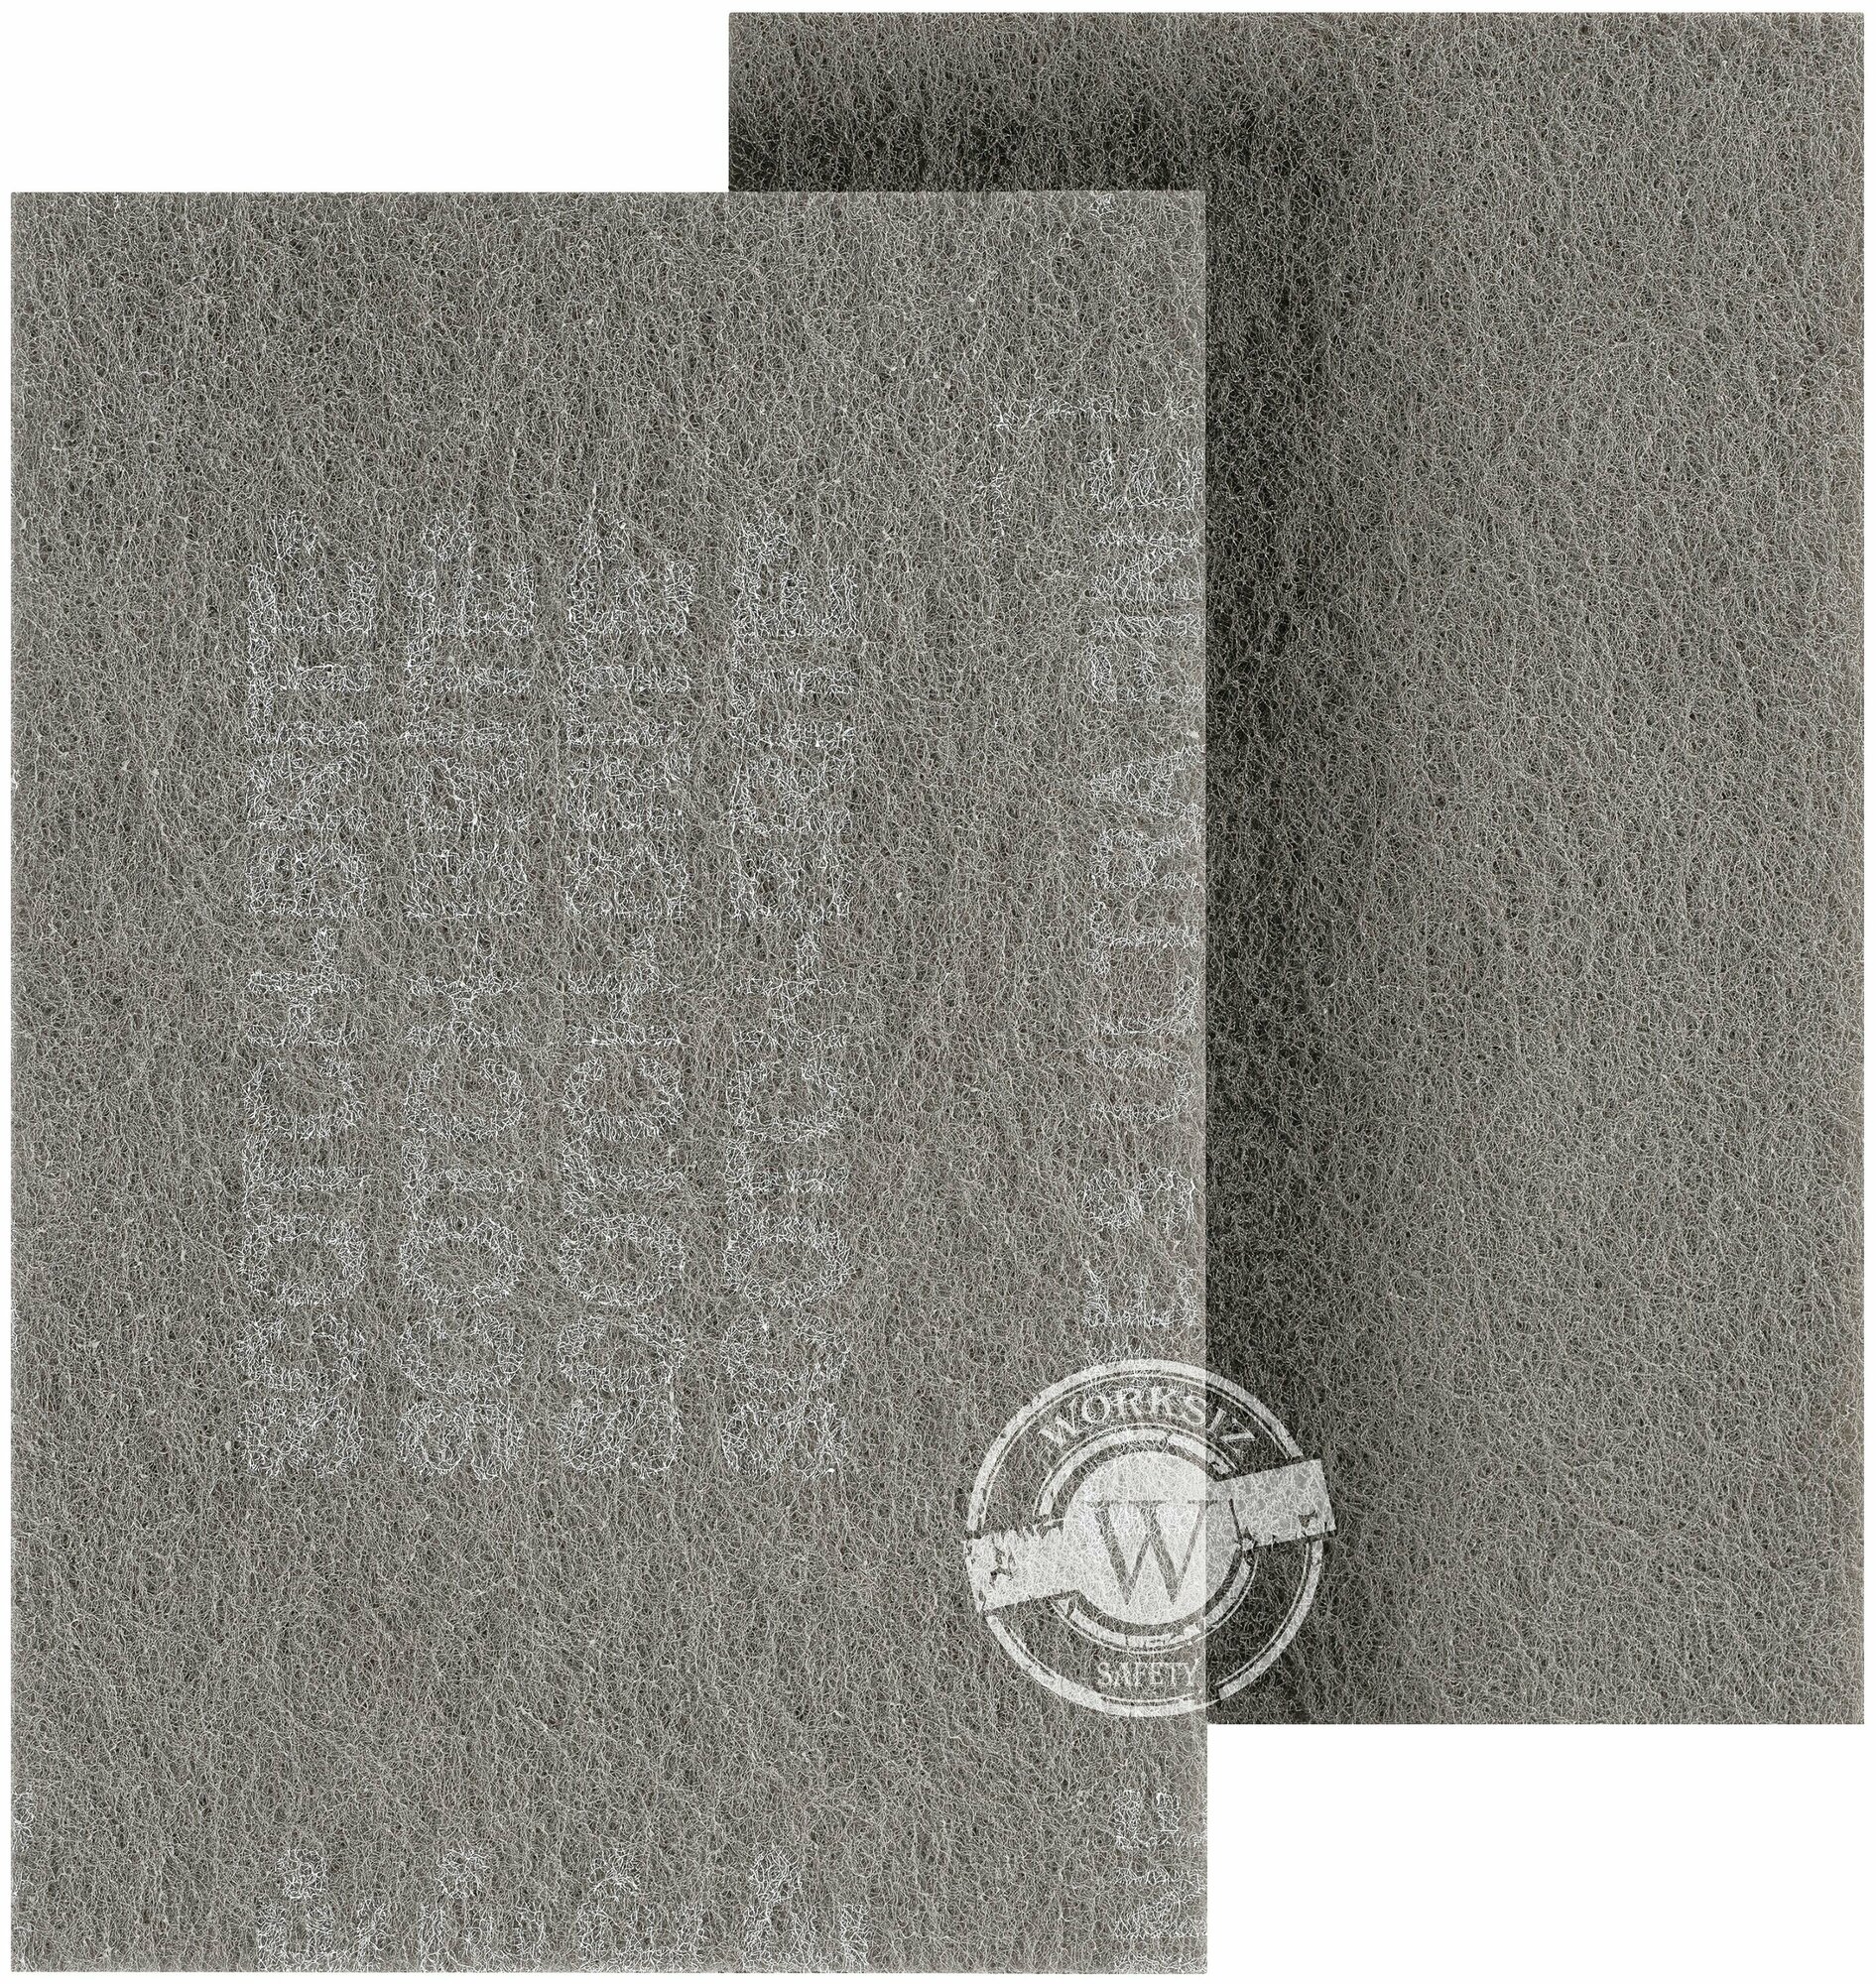 Серый абразивный шлифовальный лист 3M™ Scotch-Brite™ арт. 7448 (Скотч брайт) S UFN P500-P600, 158x224 мм, для чистовой обработки поверхности, 1 шт.